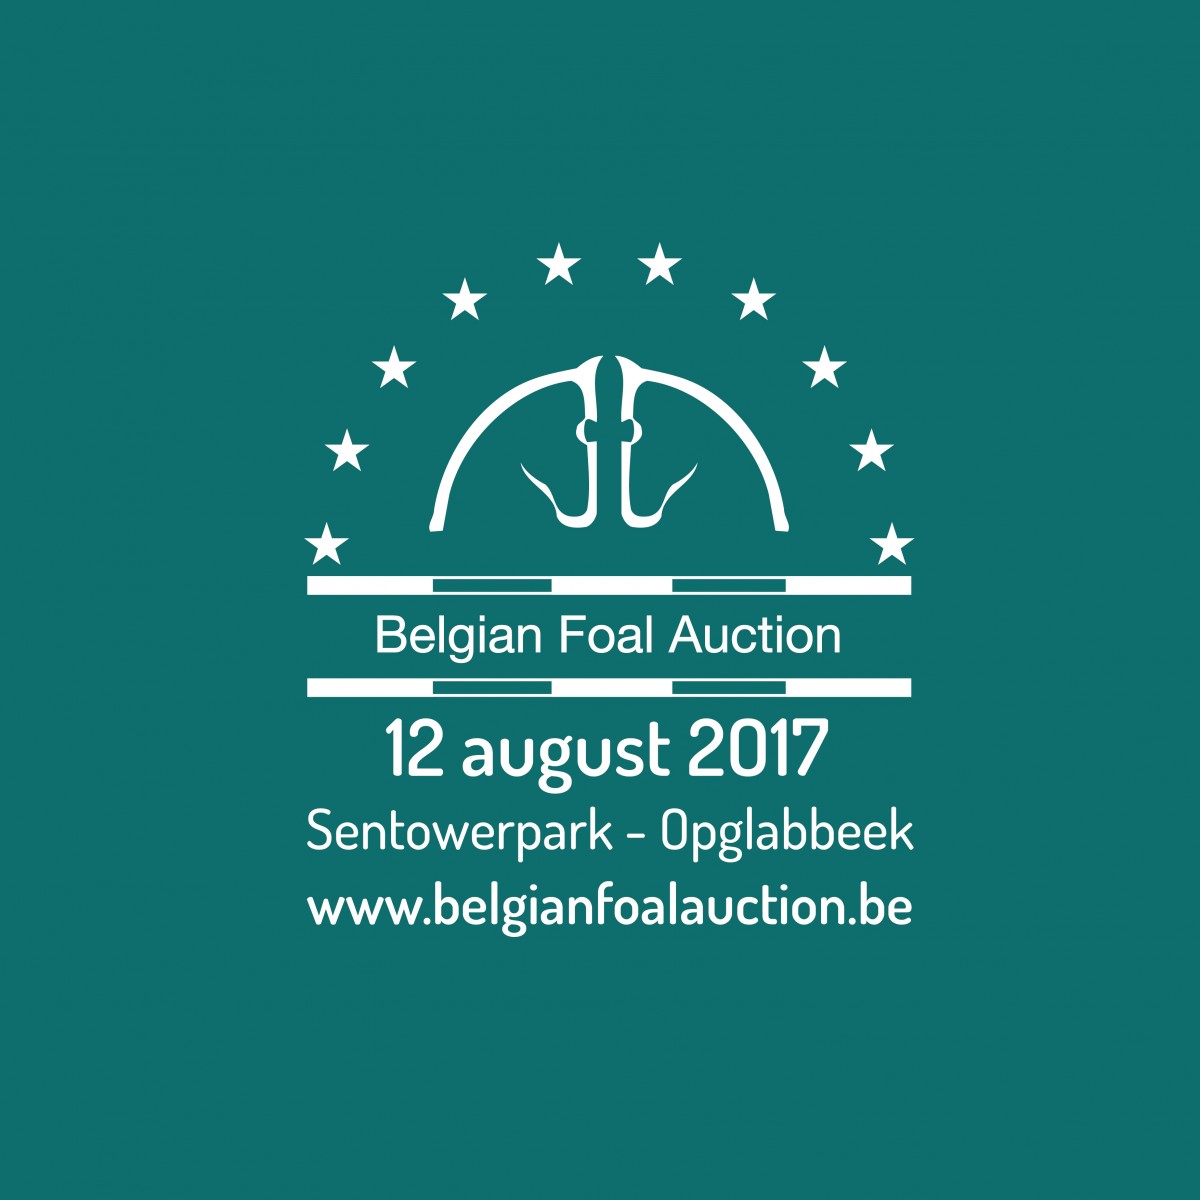 20ste editie Belgian Foal Auction; Equnews gaat partnership aan ter promotie van de fokkerij